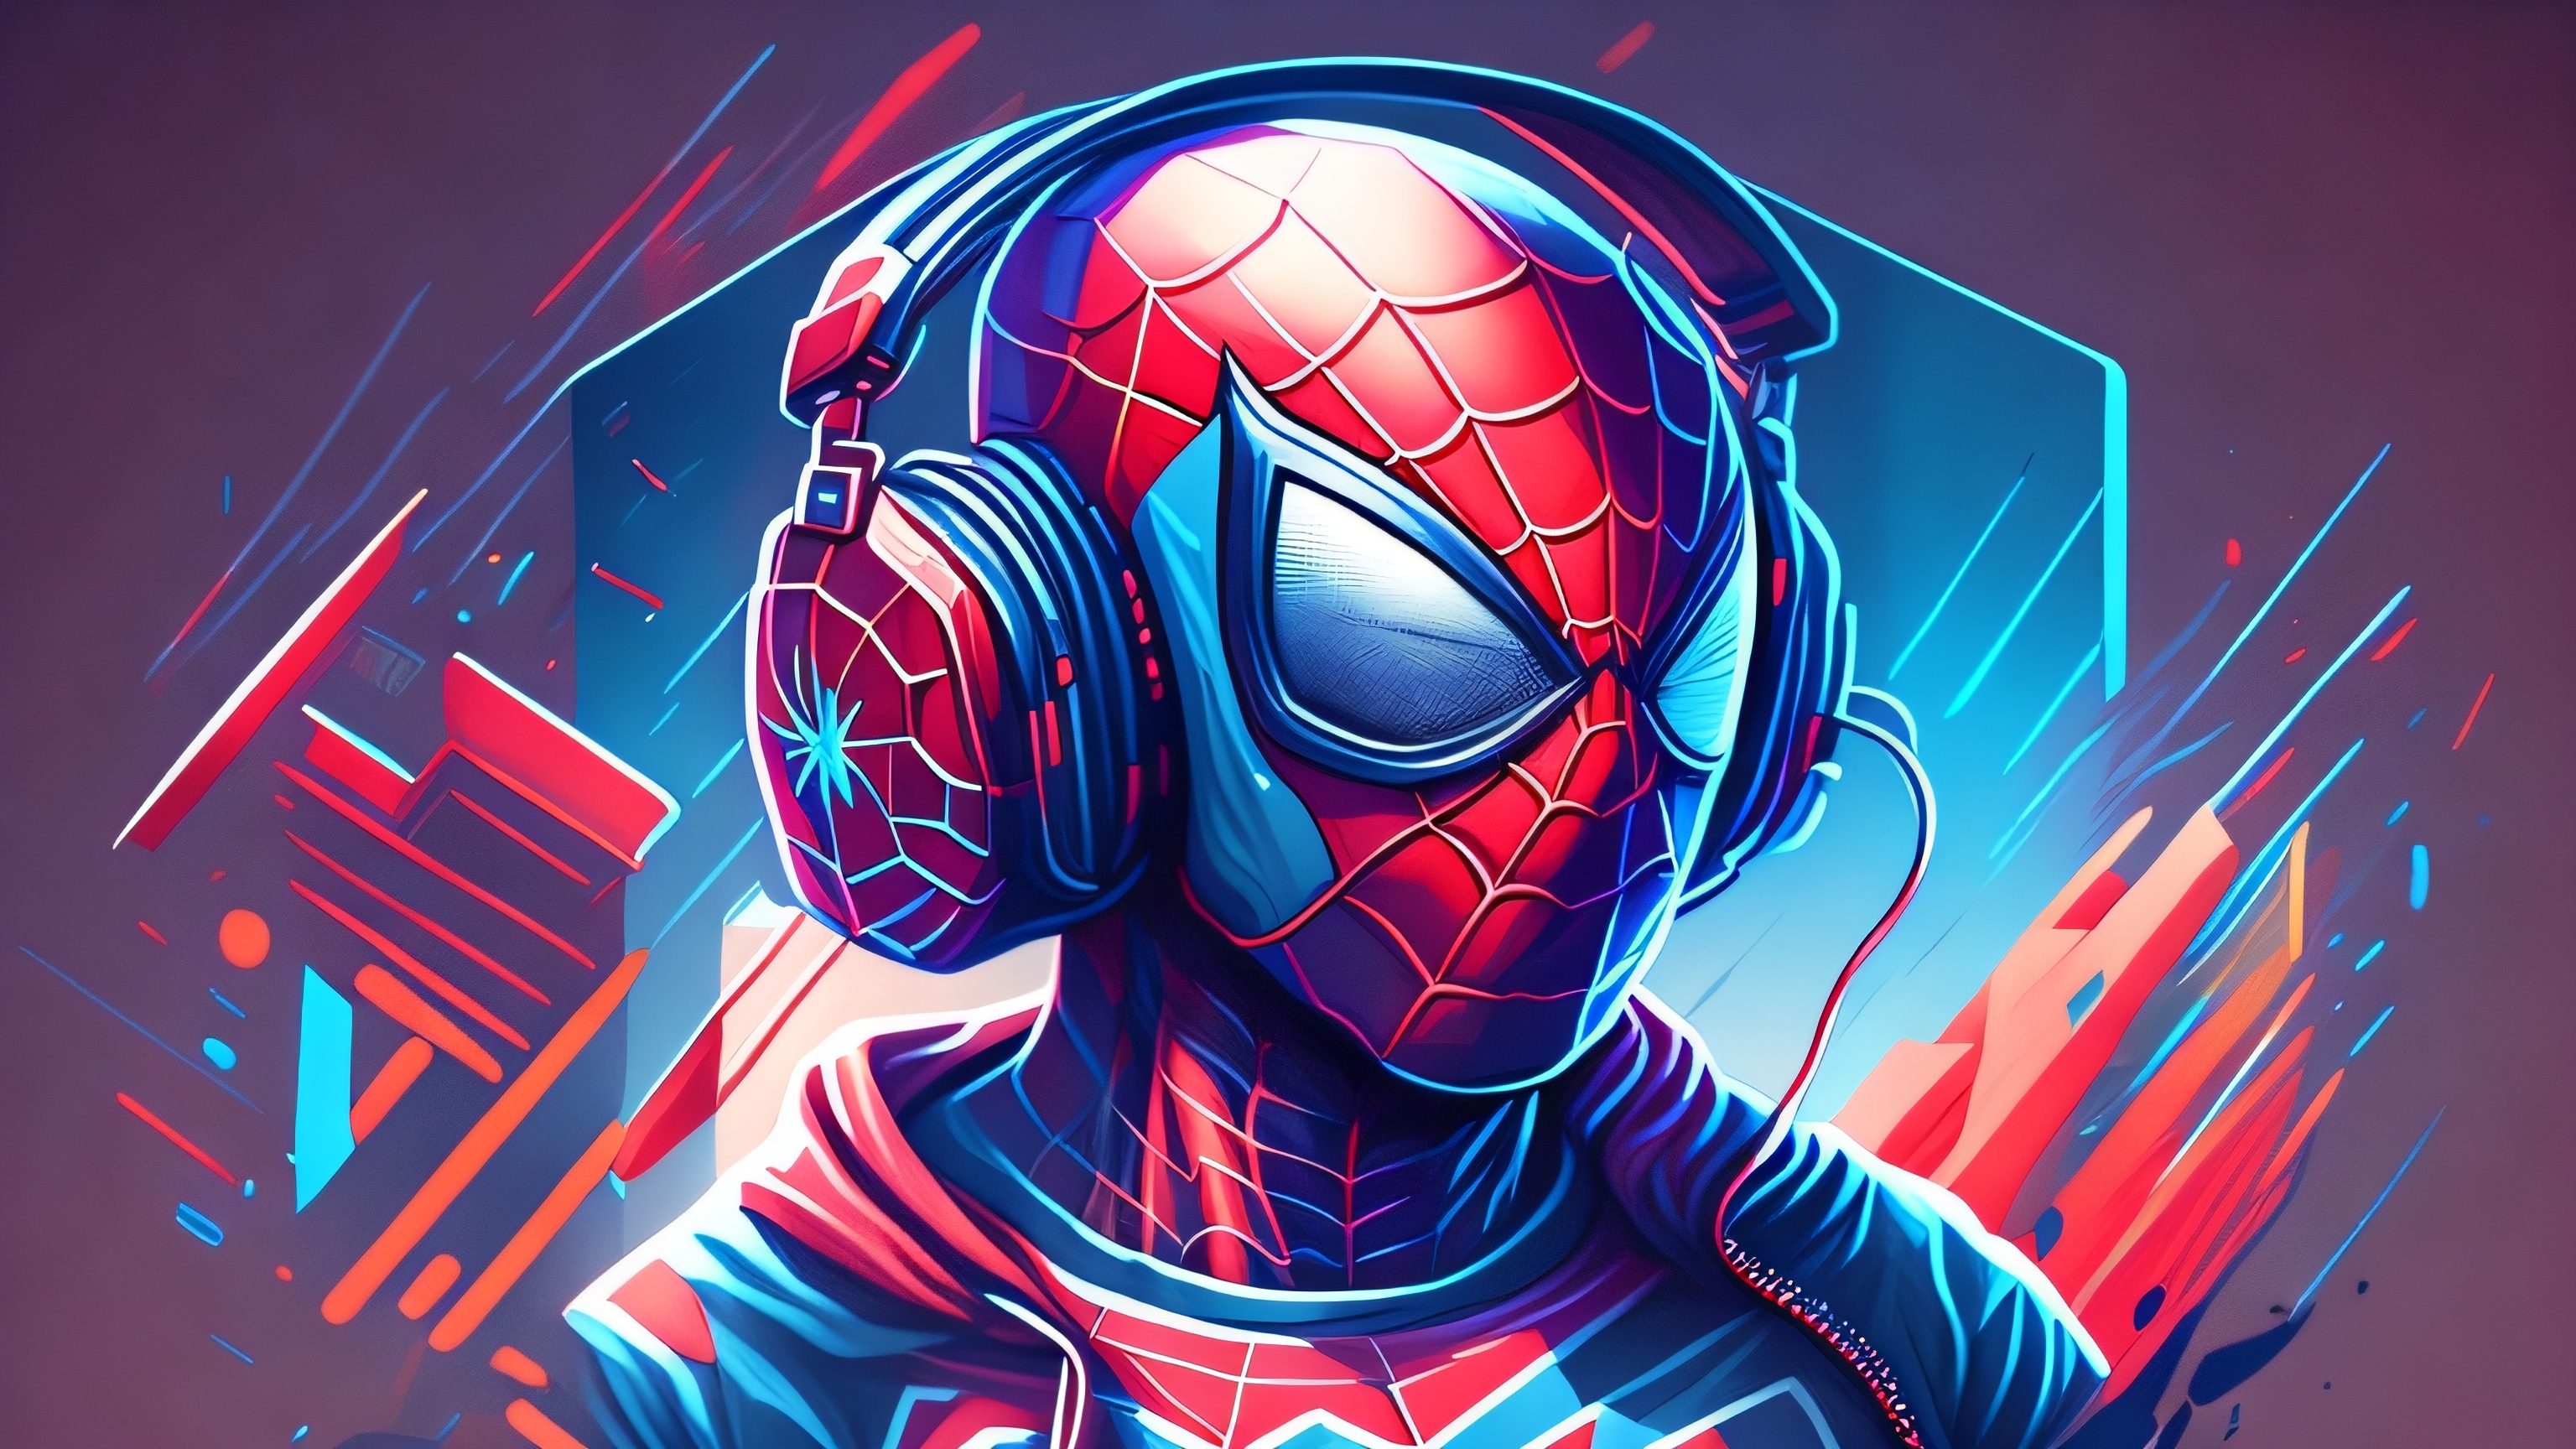 700 Spiderman Wallpapers  Wallpaperscom